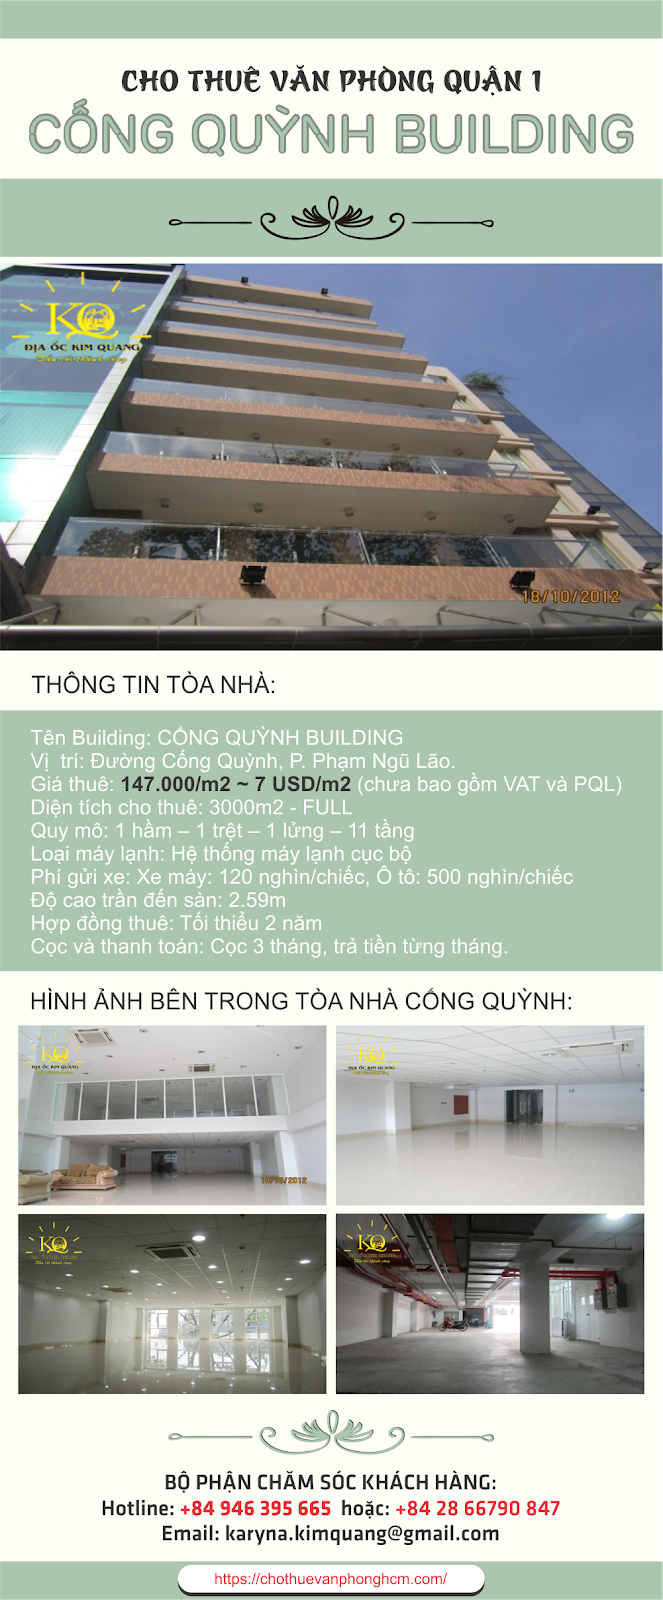 Văn phòng cho thuê quận 1 Cống Quỳnh Building